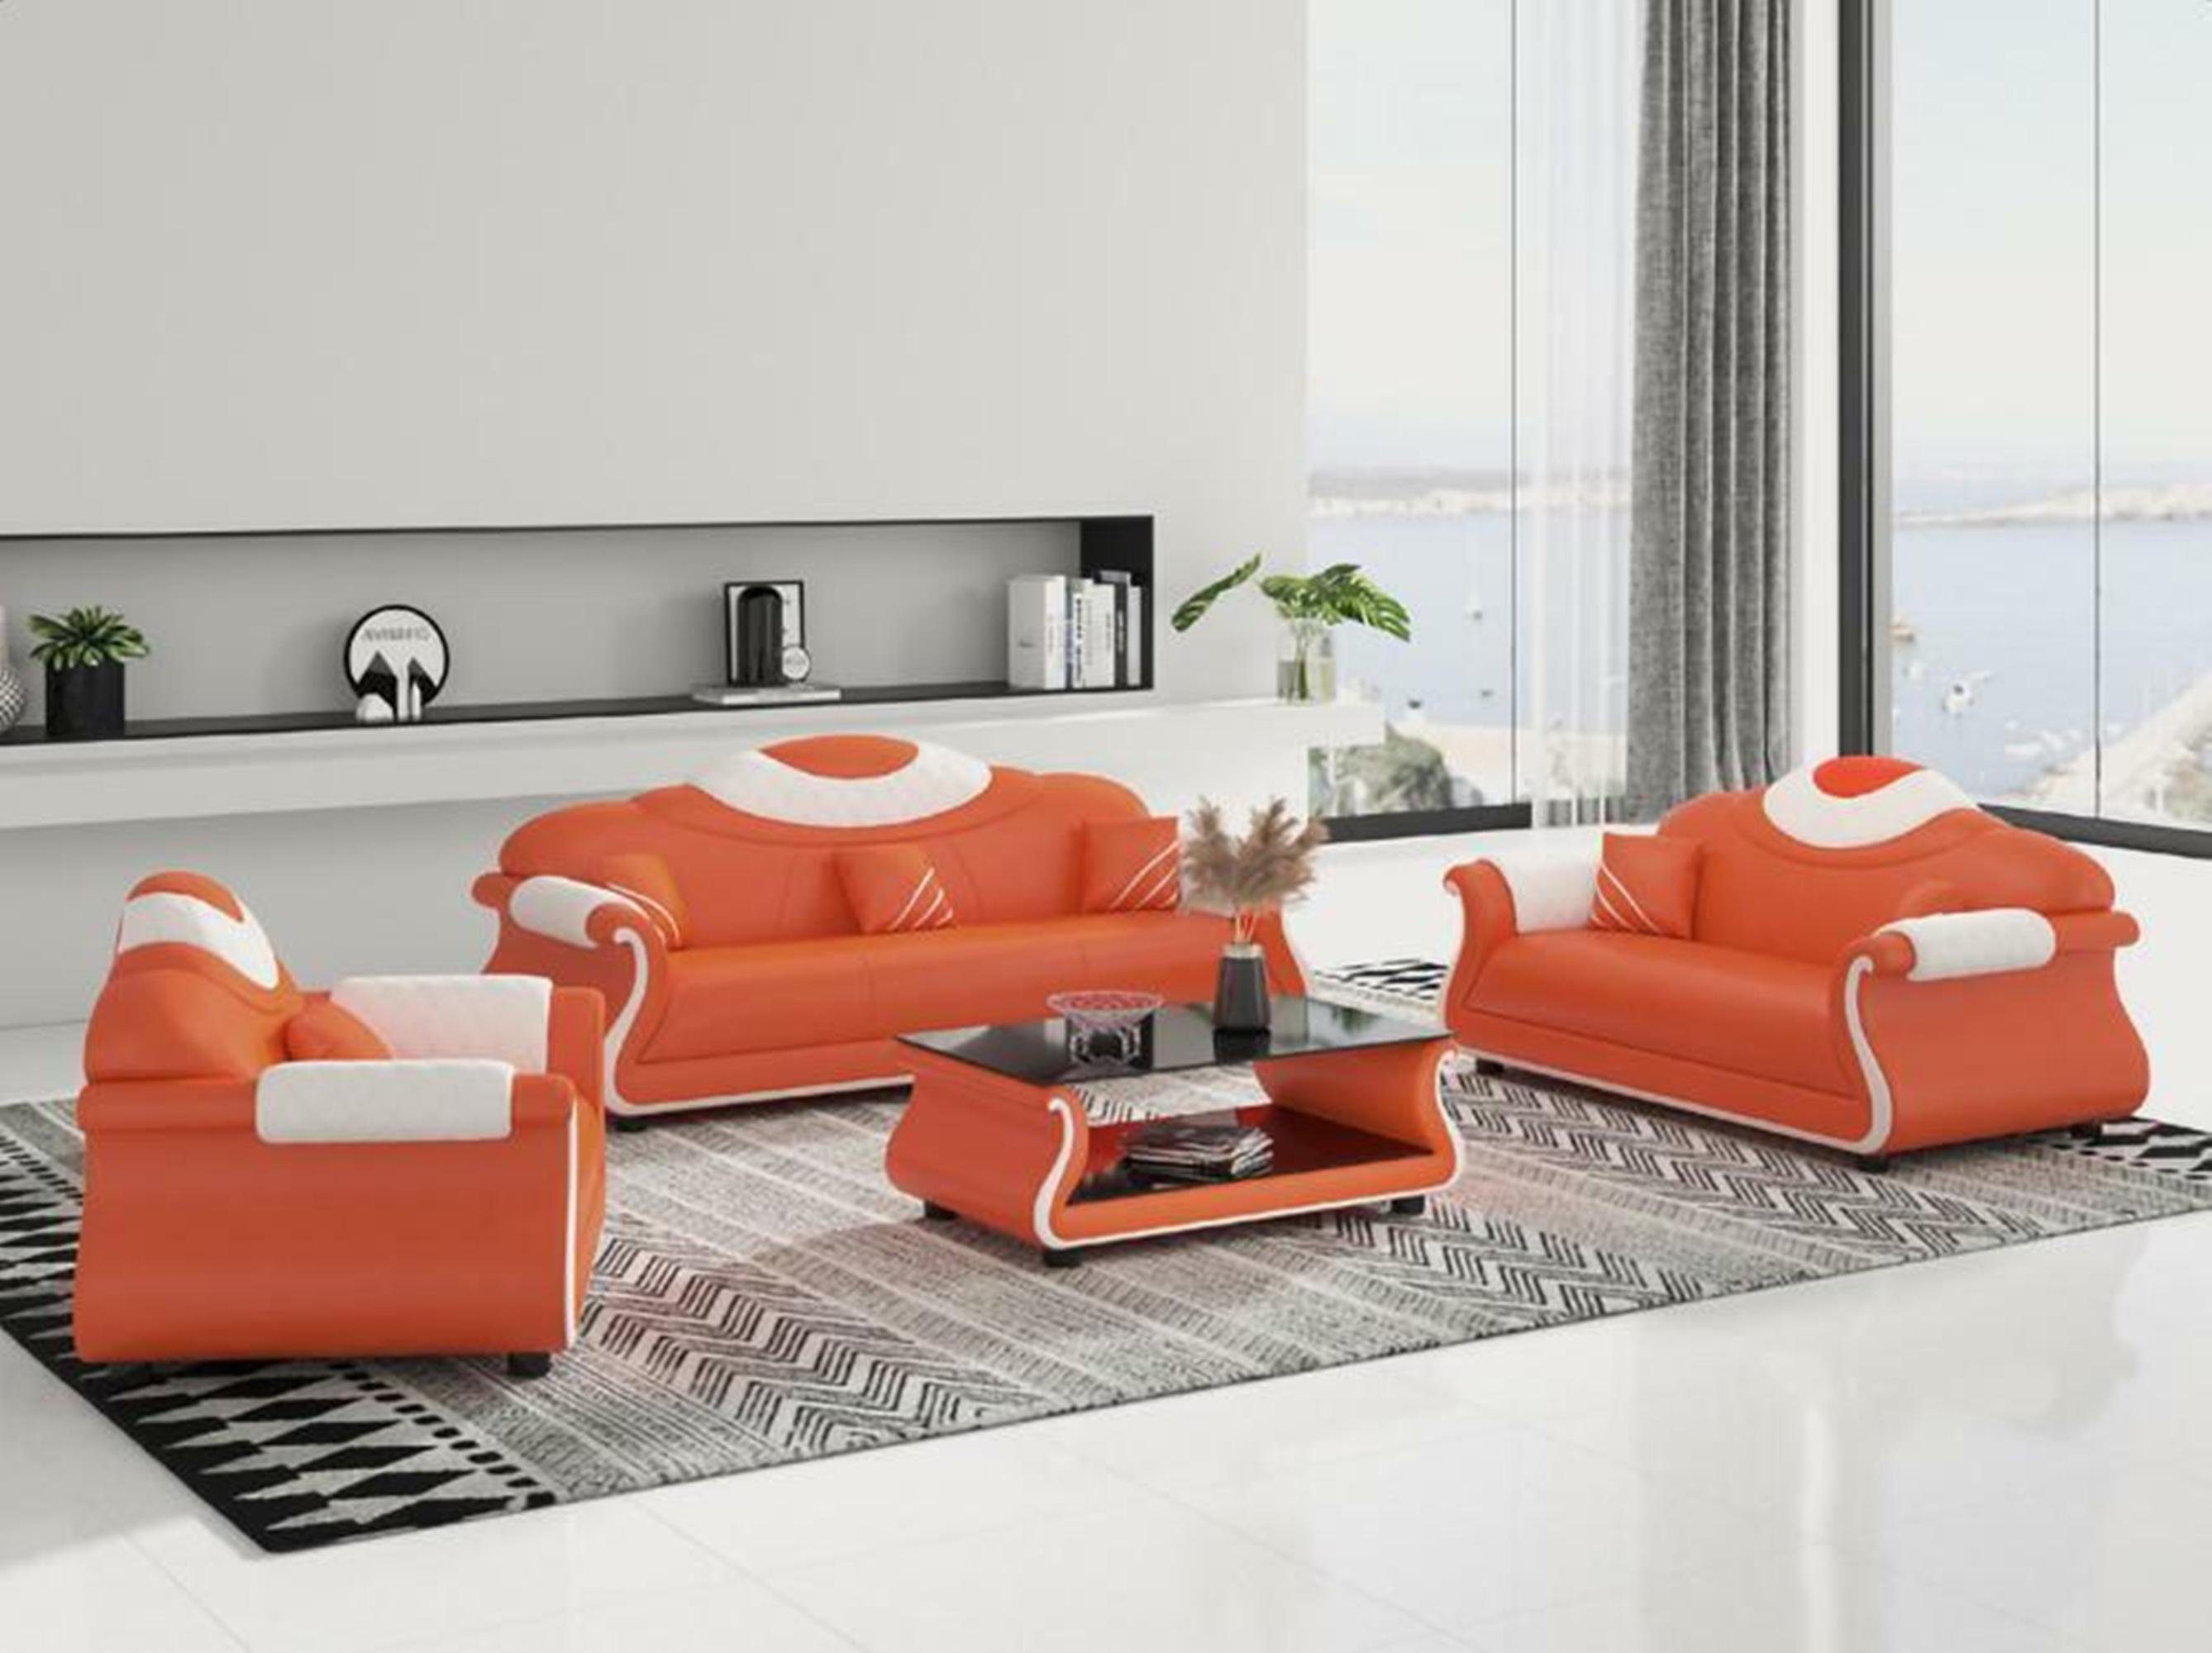 JVmoebel Wohnzimmer-Set Luxus Möbel Couch Sofa Polster 3+2+1 Sitzer + Couchtisch Holz neu Orange/Weiß